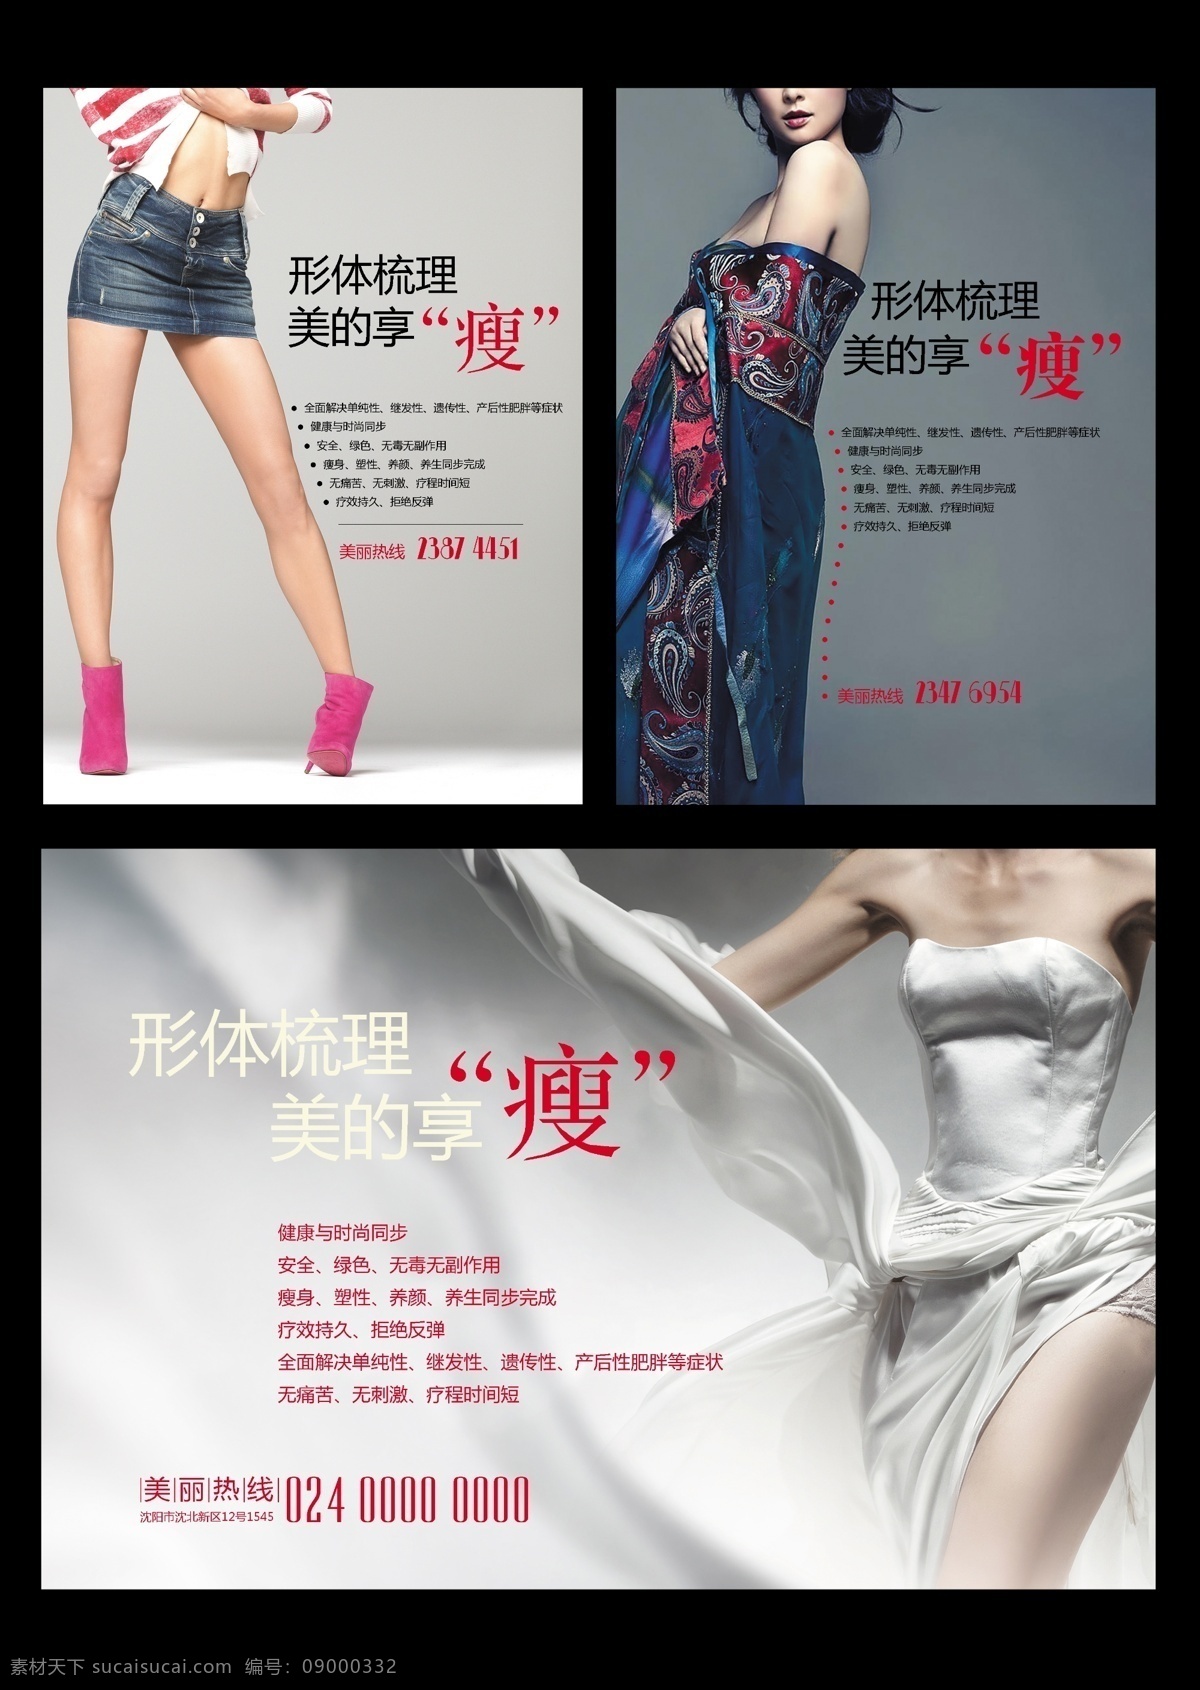 瘦身海报 减肥 瘦身 中式 美女 美腿 高跟鞋 裙子 优美 高雅 版式 牛仔 中国传统服饰 粉色 广告设计模板 源文件